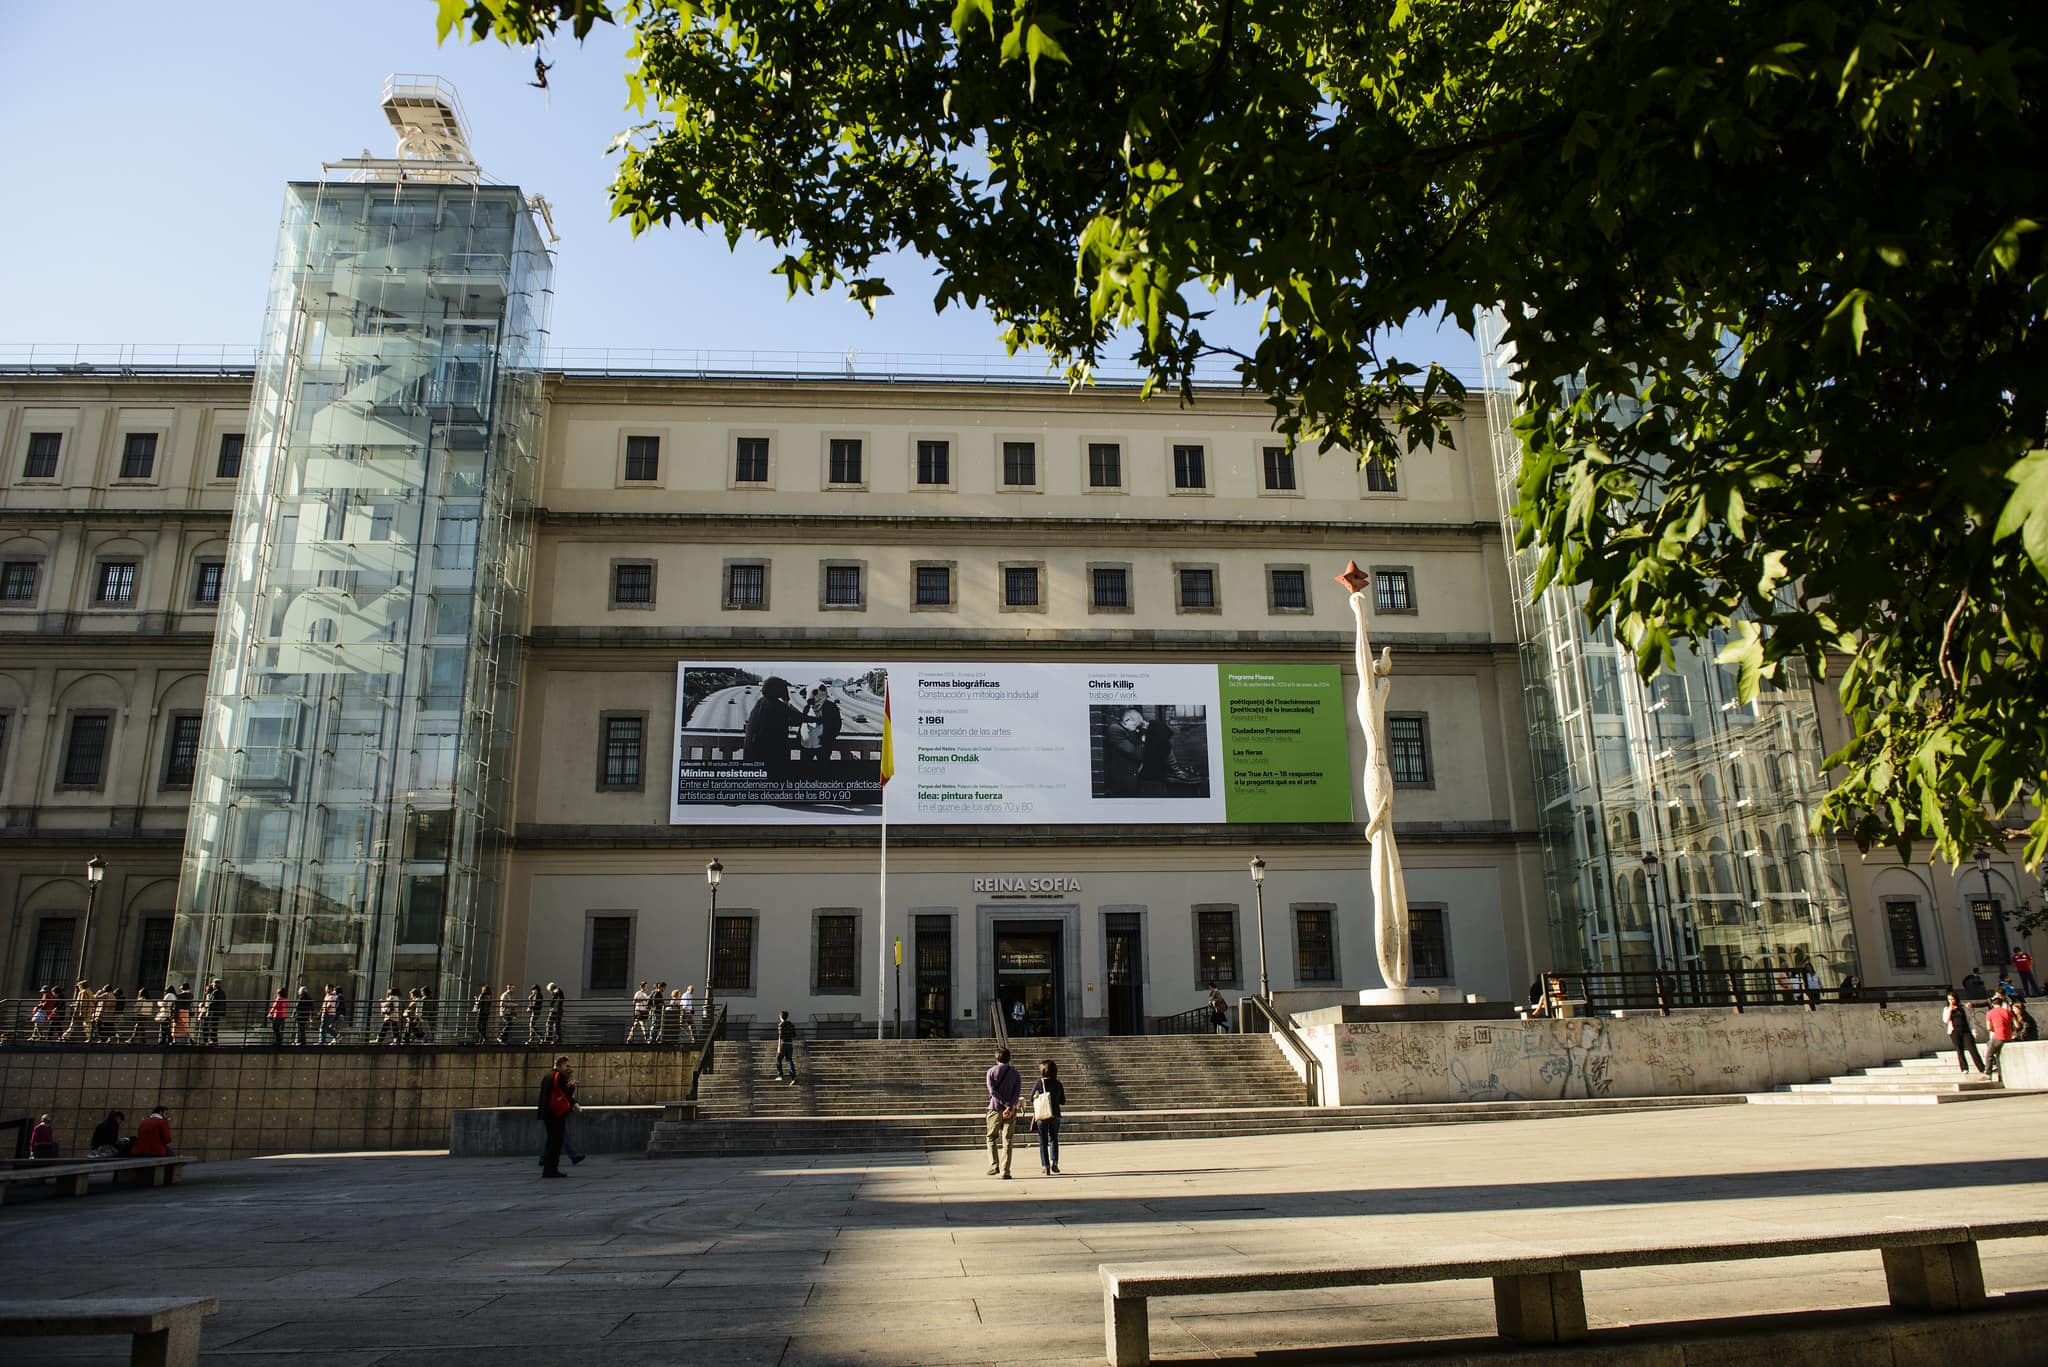 Reina Sofia museum in Madrid, Spain